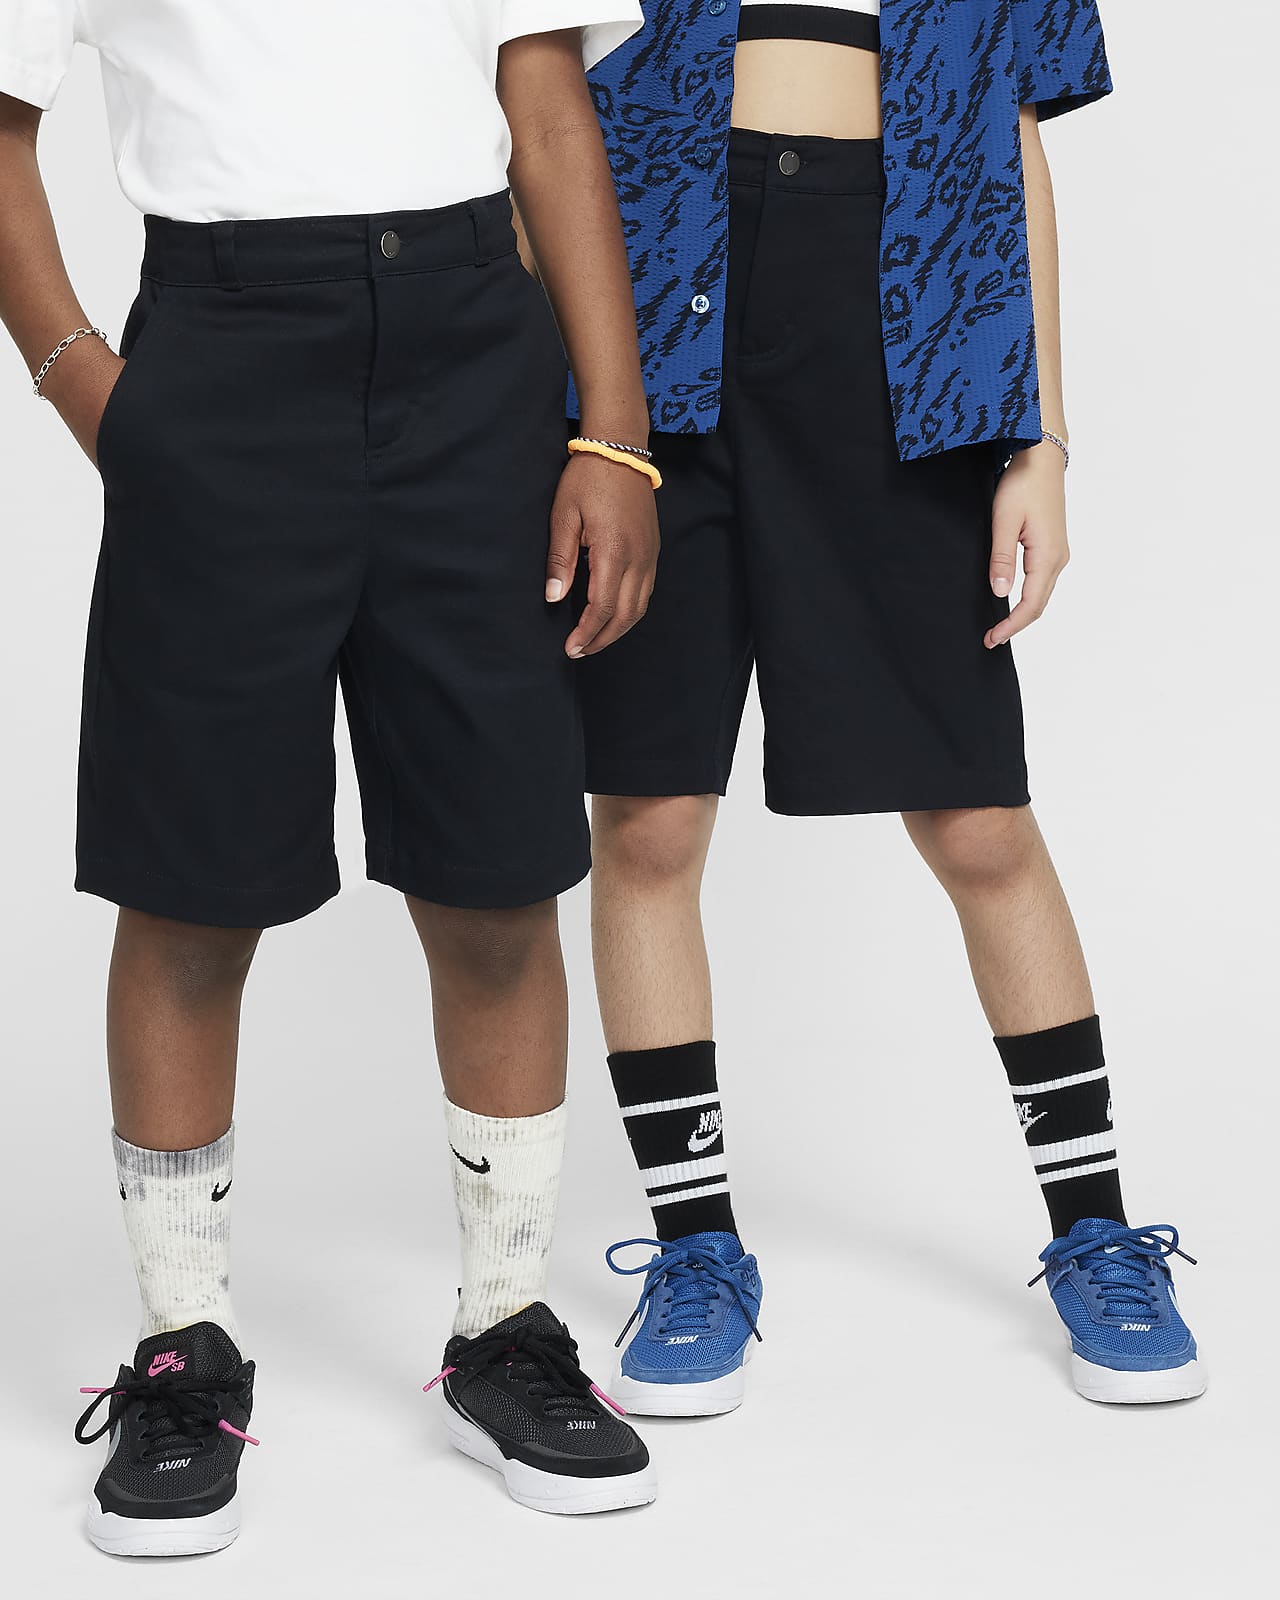 Nike SB Pantalón corto chino de skateboard - Niño/a